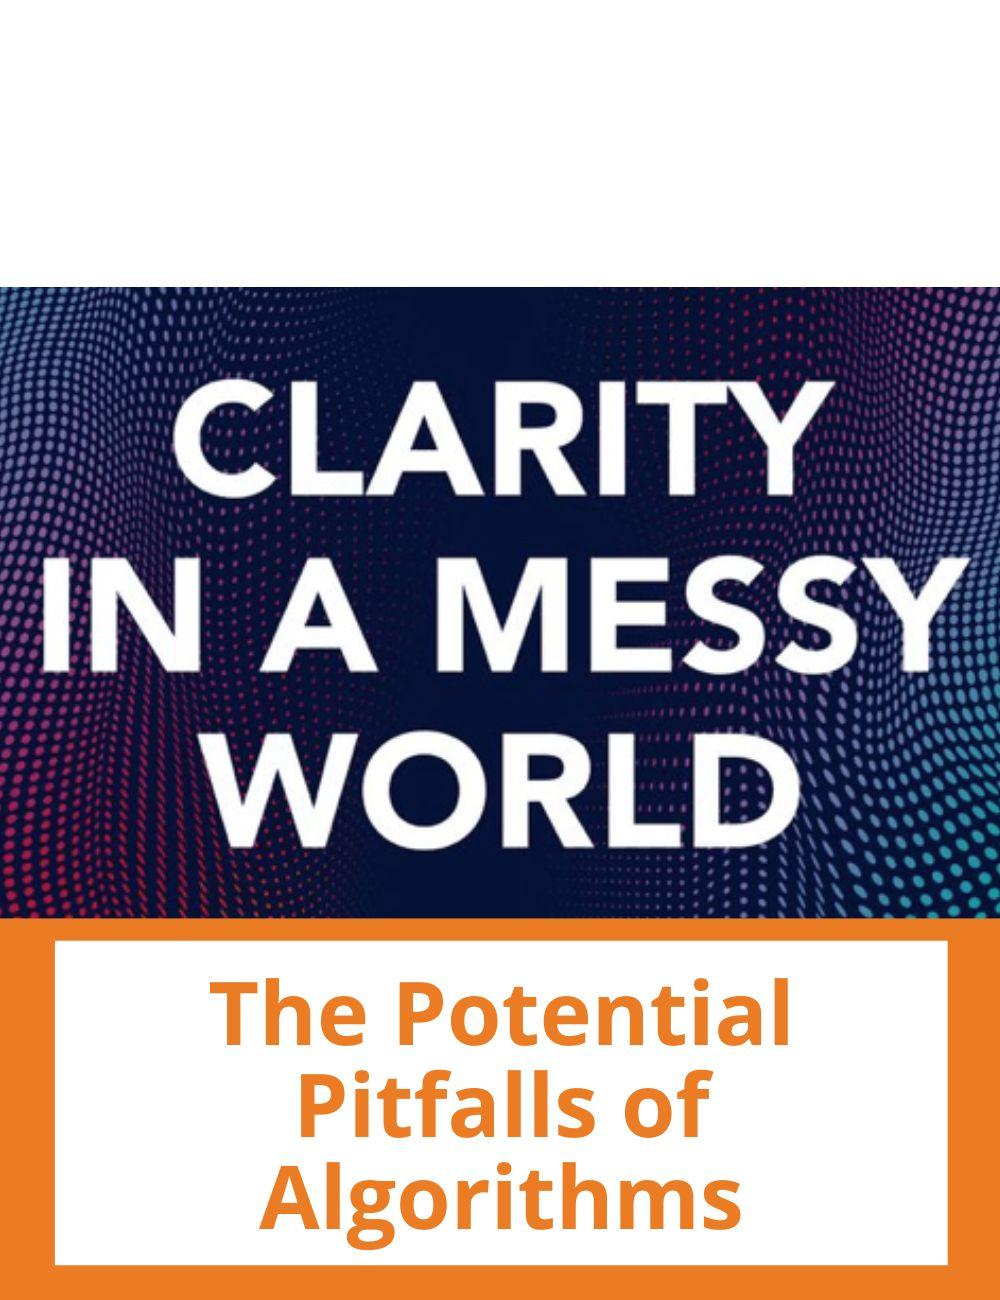 Immagine con link a podcast e video su temi simili. L'immagine della copertina del podcast Clarity in a Messy World rimanda al podcast intitolato: The Potential Pitfalls of Algorithms